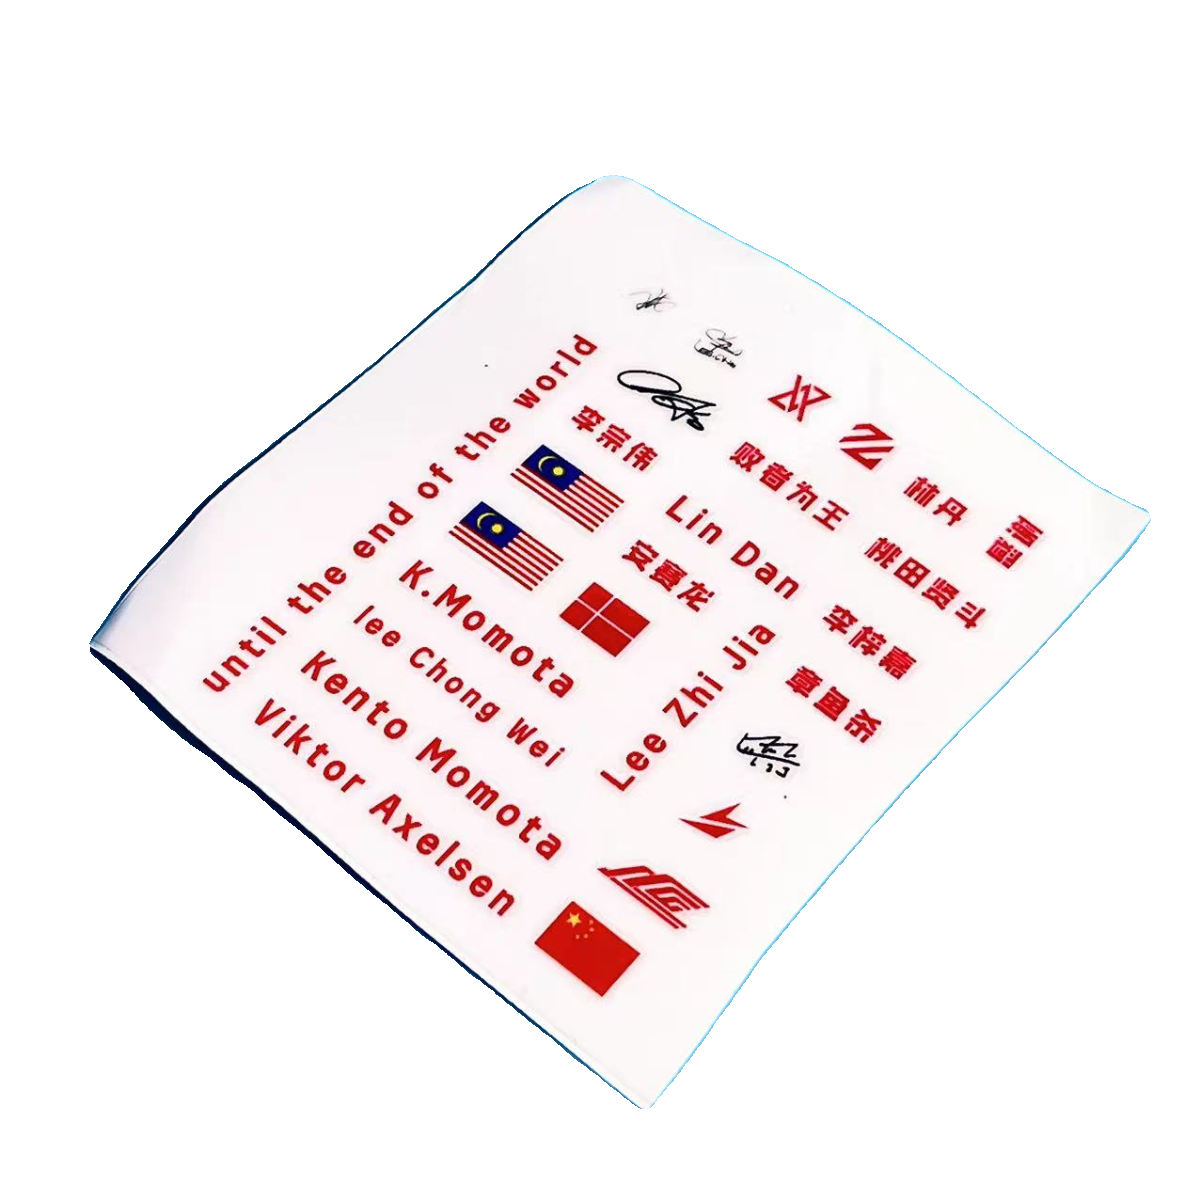 林丹李宗伟安赛龙李梓嘉签名水标贴羽毛球拍装饰转印贴纸纪念周边 - 图3